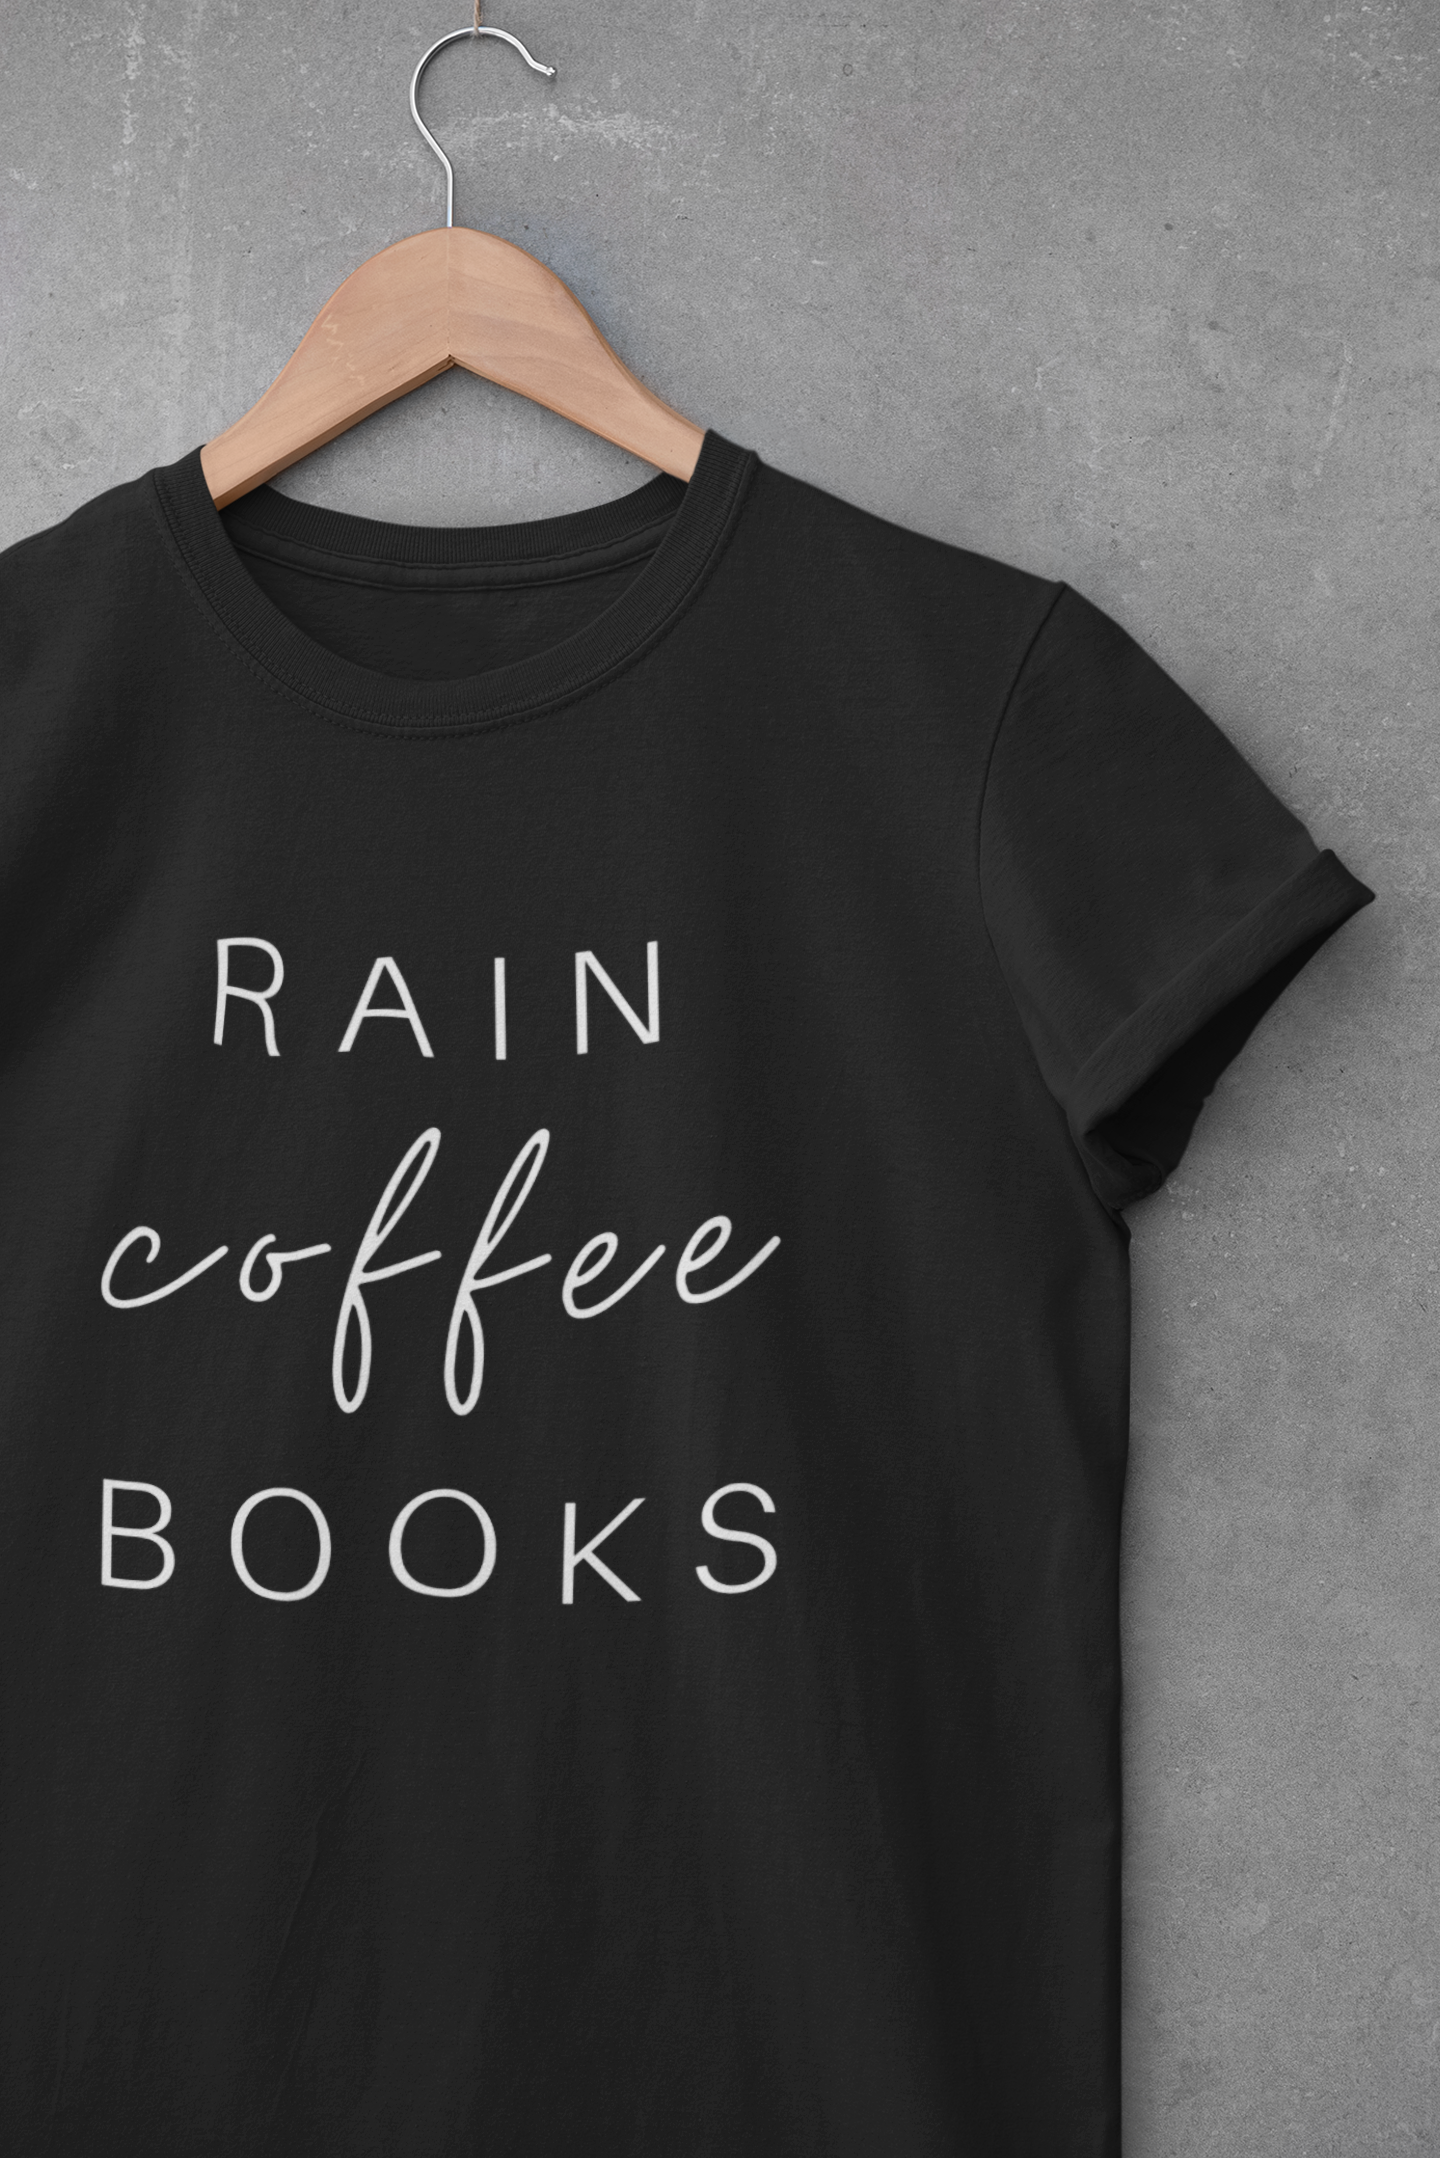 Rain Coffee Books Black Tshirt